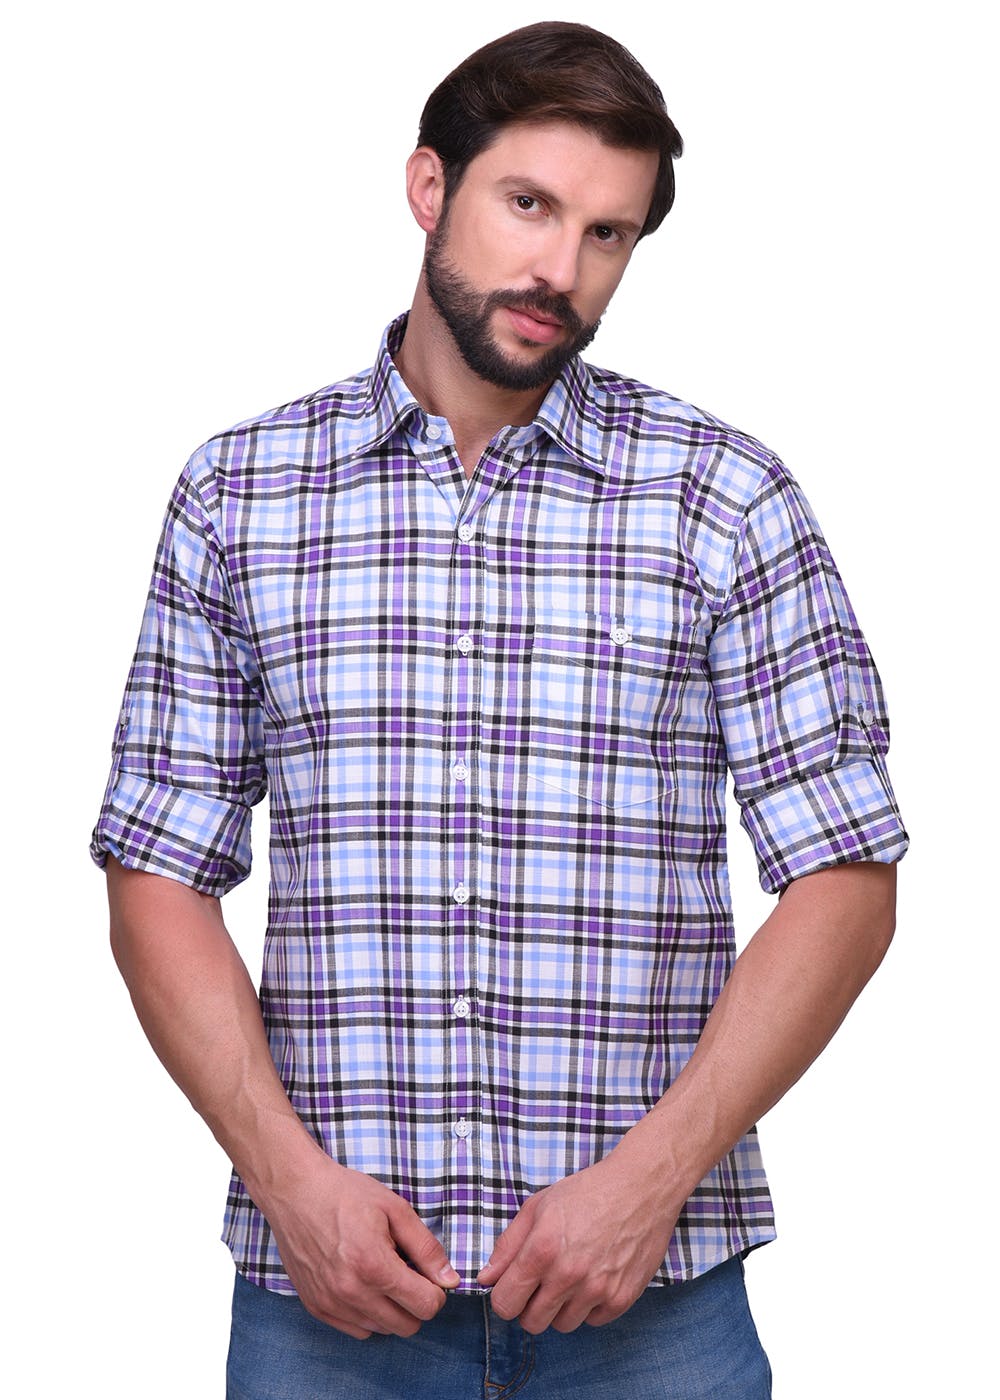 Get Panel Checkered Full Sleeves Shirt at ₹ 999 | LBB Shop